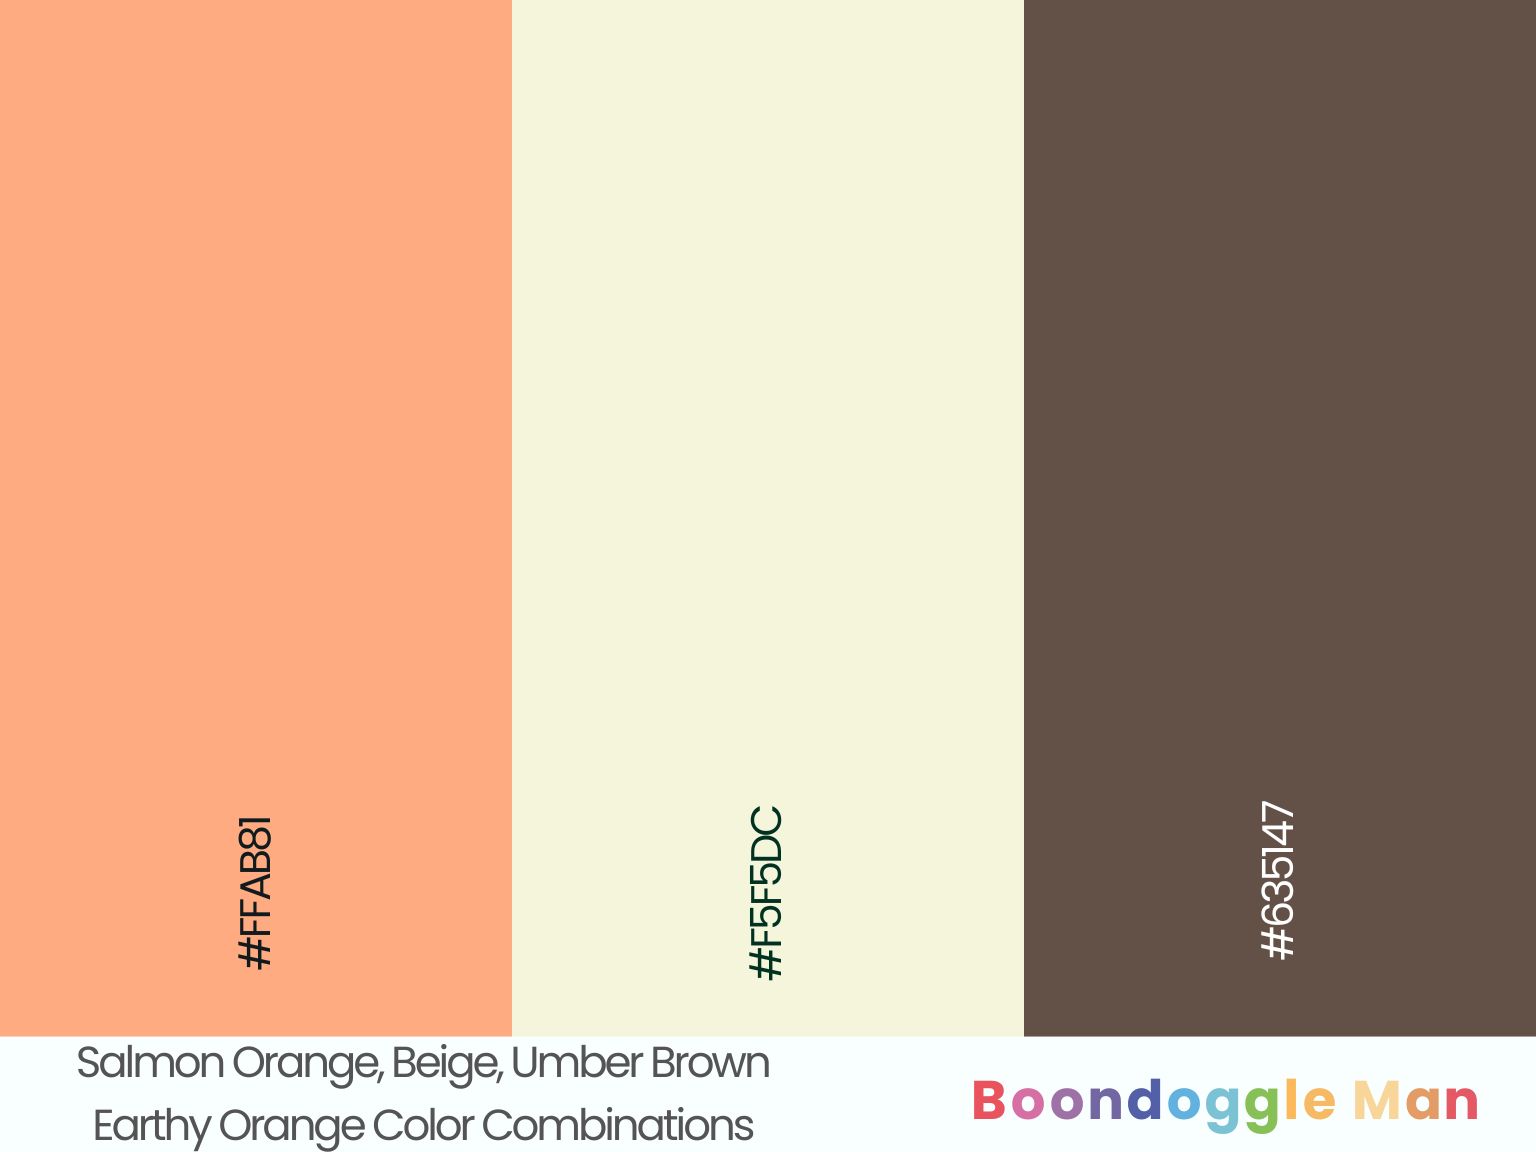 Salmon Orange, Beige, Umber Brown